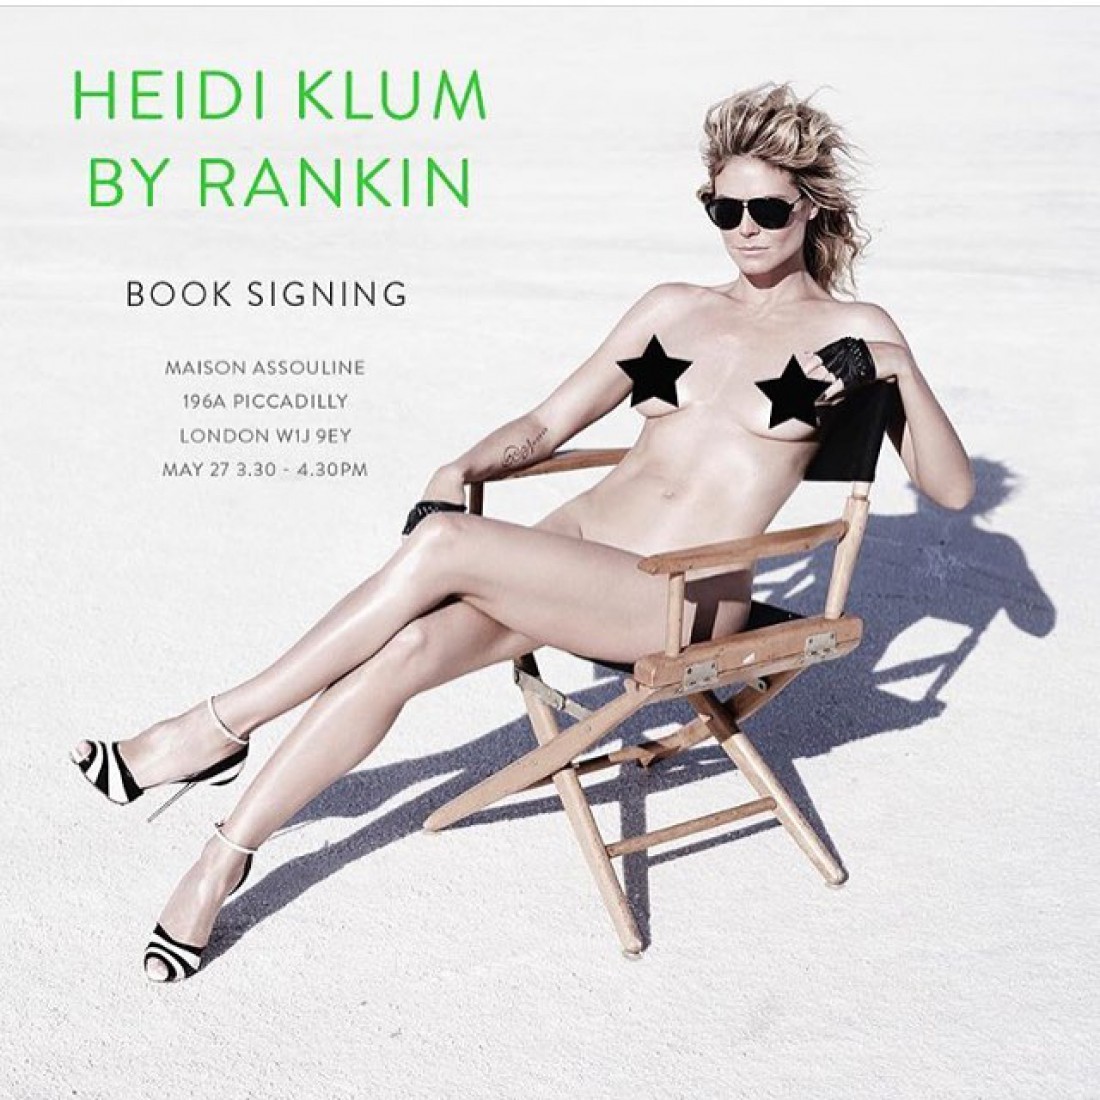 44-летняя модель Хайди Клум полностью обнажилась для откровенной фотосессии 